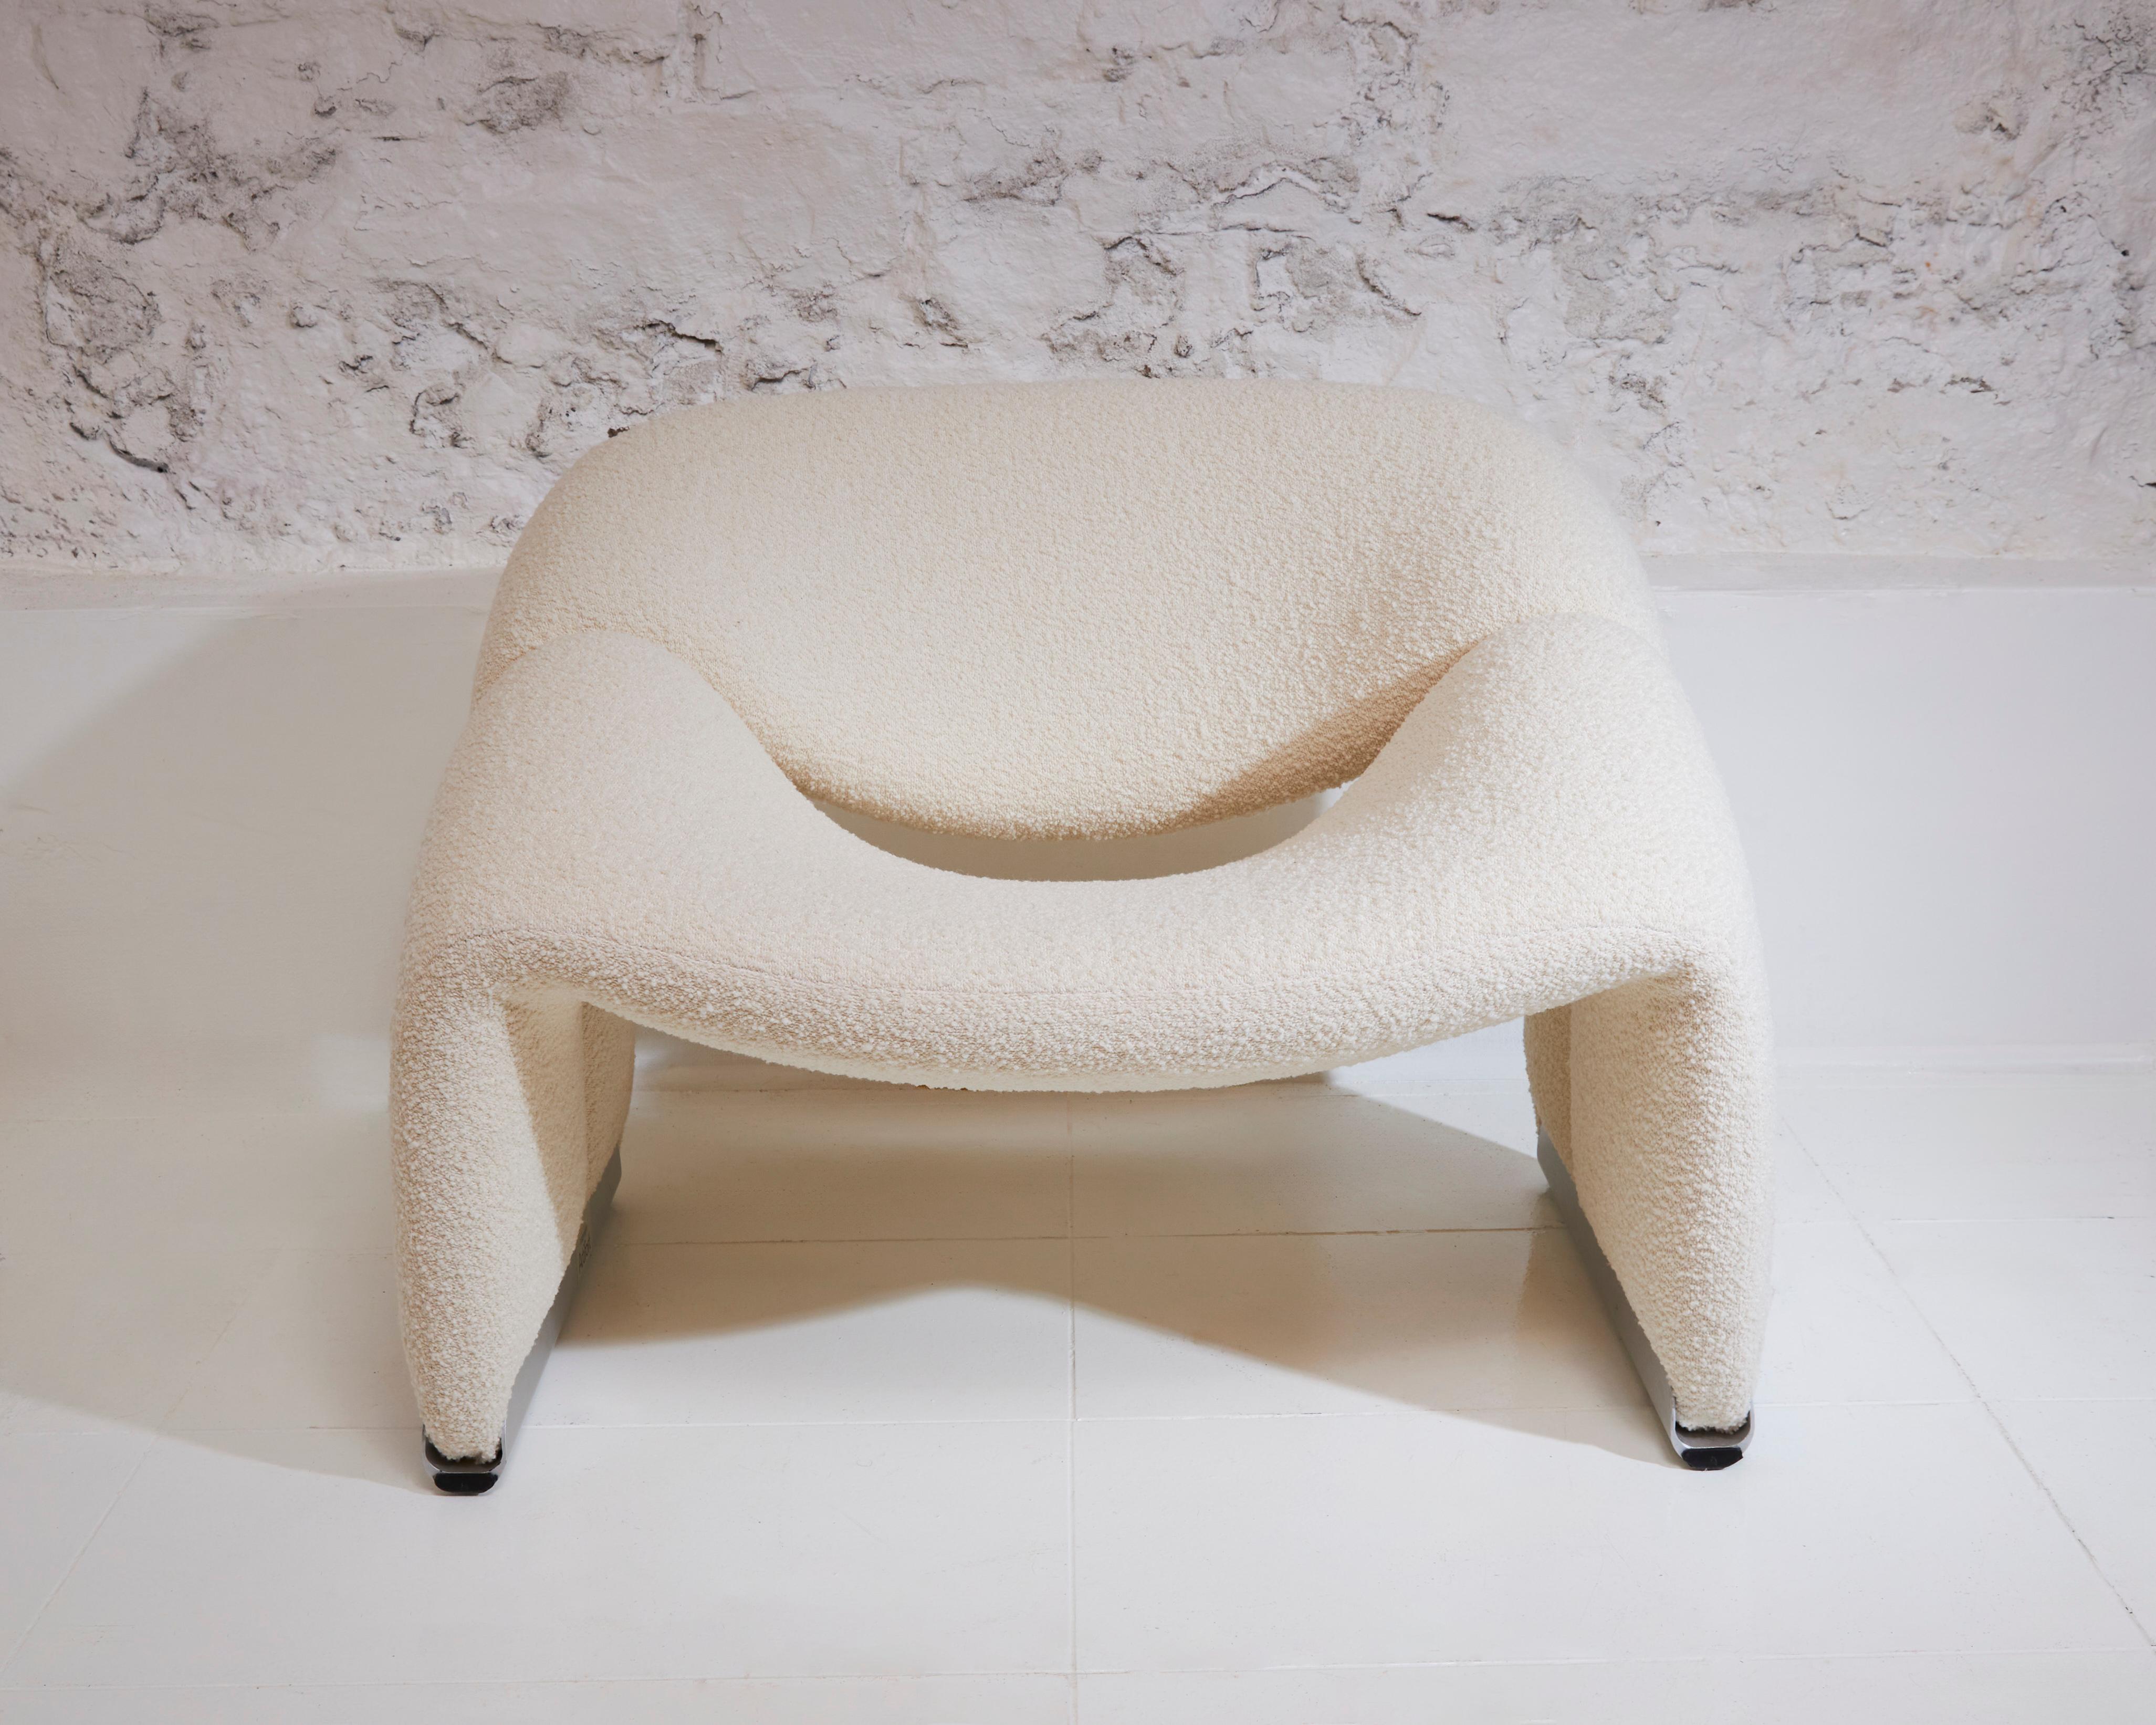 Der von Pierre Paulin entworfene Stuhl Groovy verkörpert mit seinem innovativen Design und seinem ikonischen Stil den Geist der 60er und 70er Jahre. Der renommierte französische Designer Paulin entwarf den Groovy-Stuhl 1966 für Artifort, einen